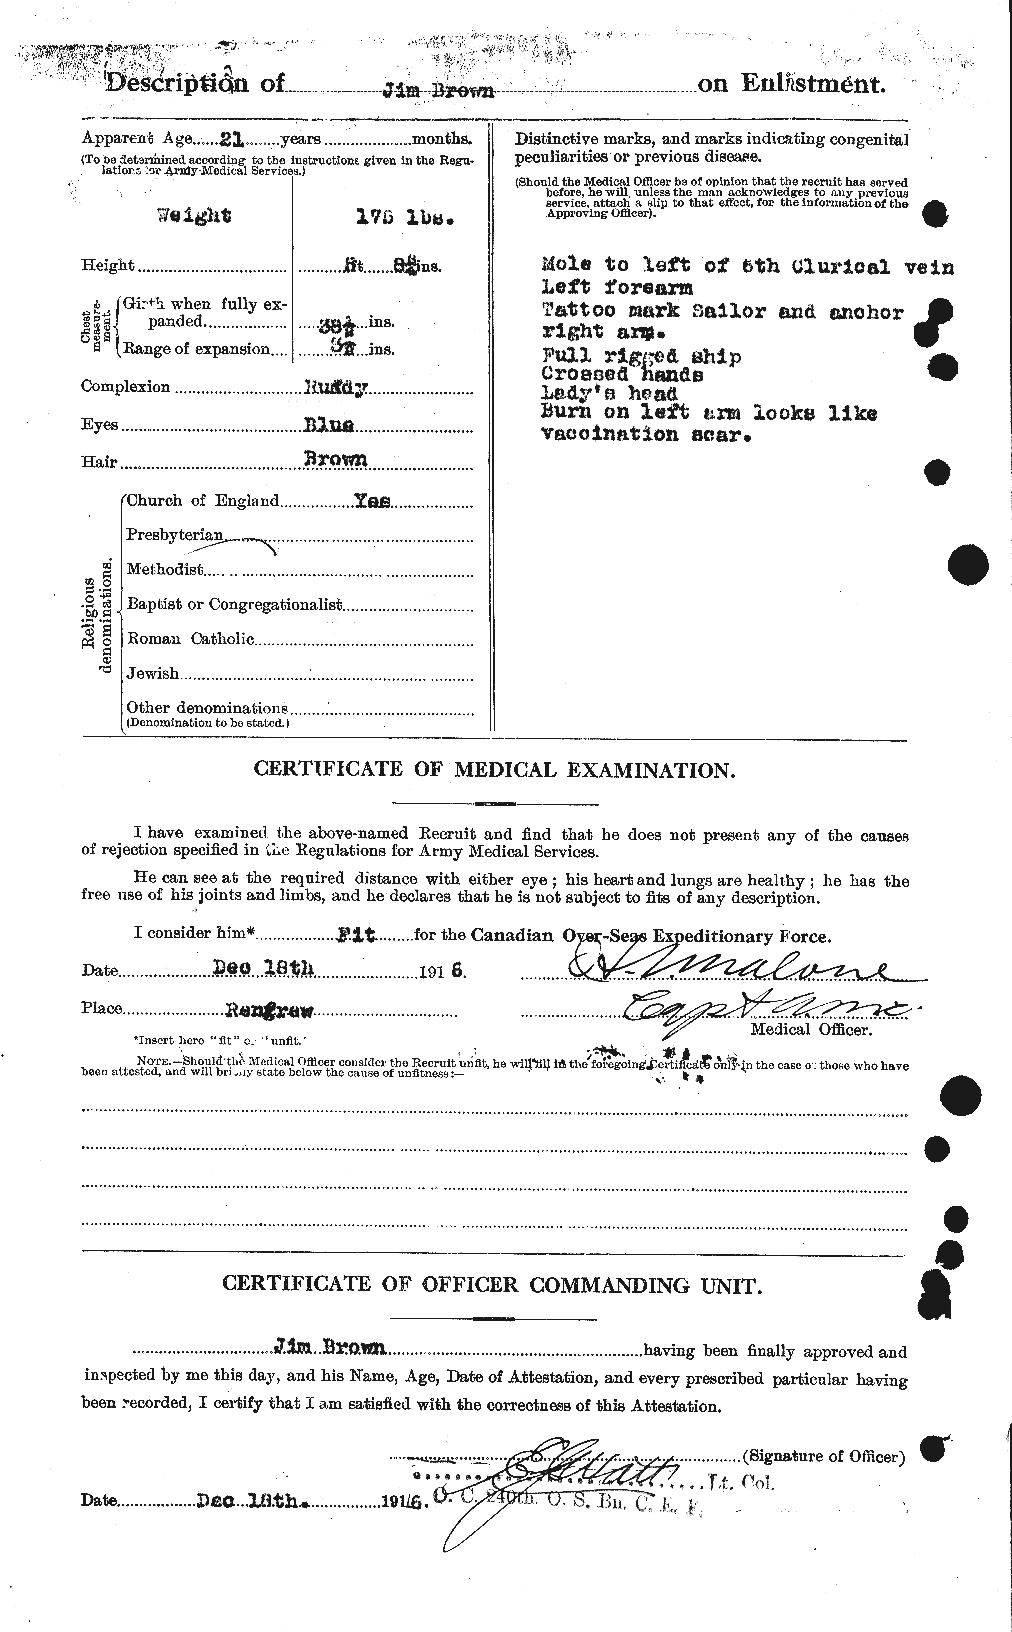 Dossiers du Personnel de la Première Guerre mondiale - CEC 265766b